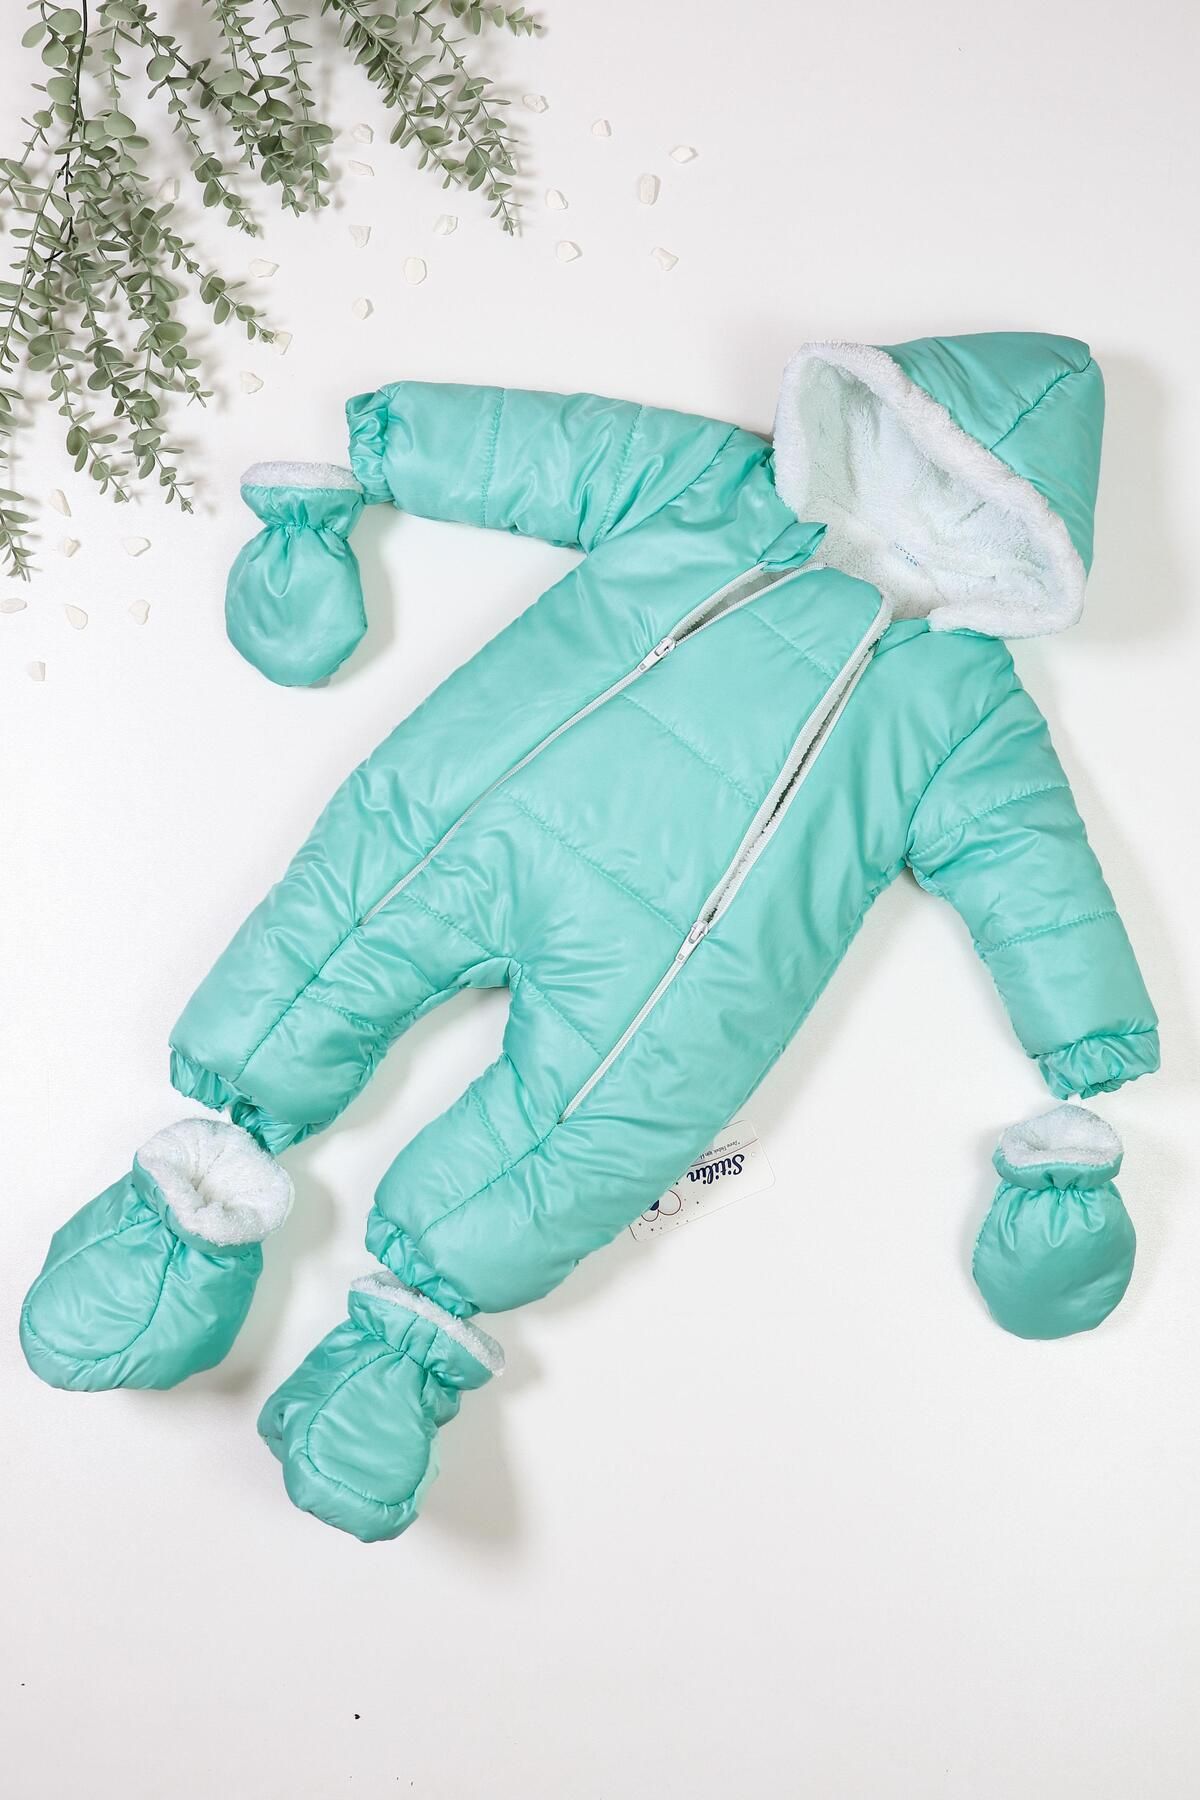 Sitilin Kız Erkek Bebek Yeşil Astronot Kozmonot Tulum Mont STL6432